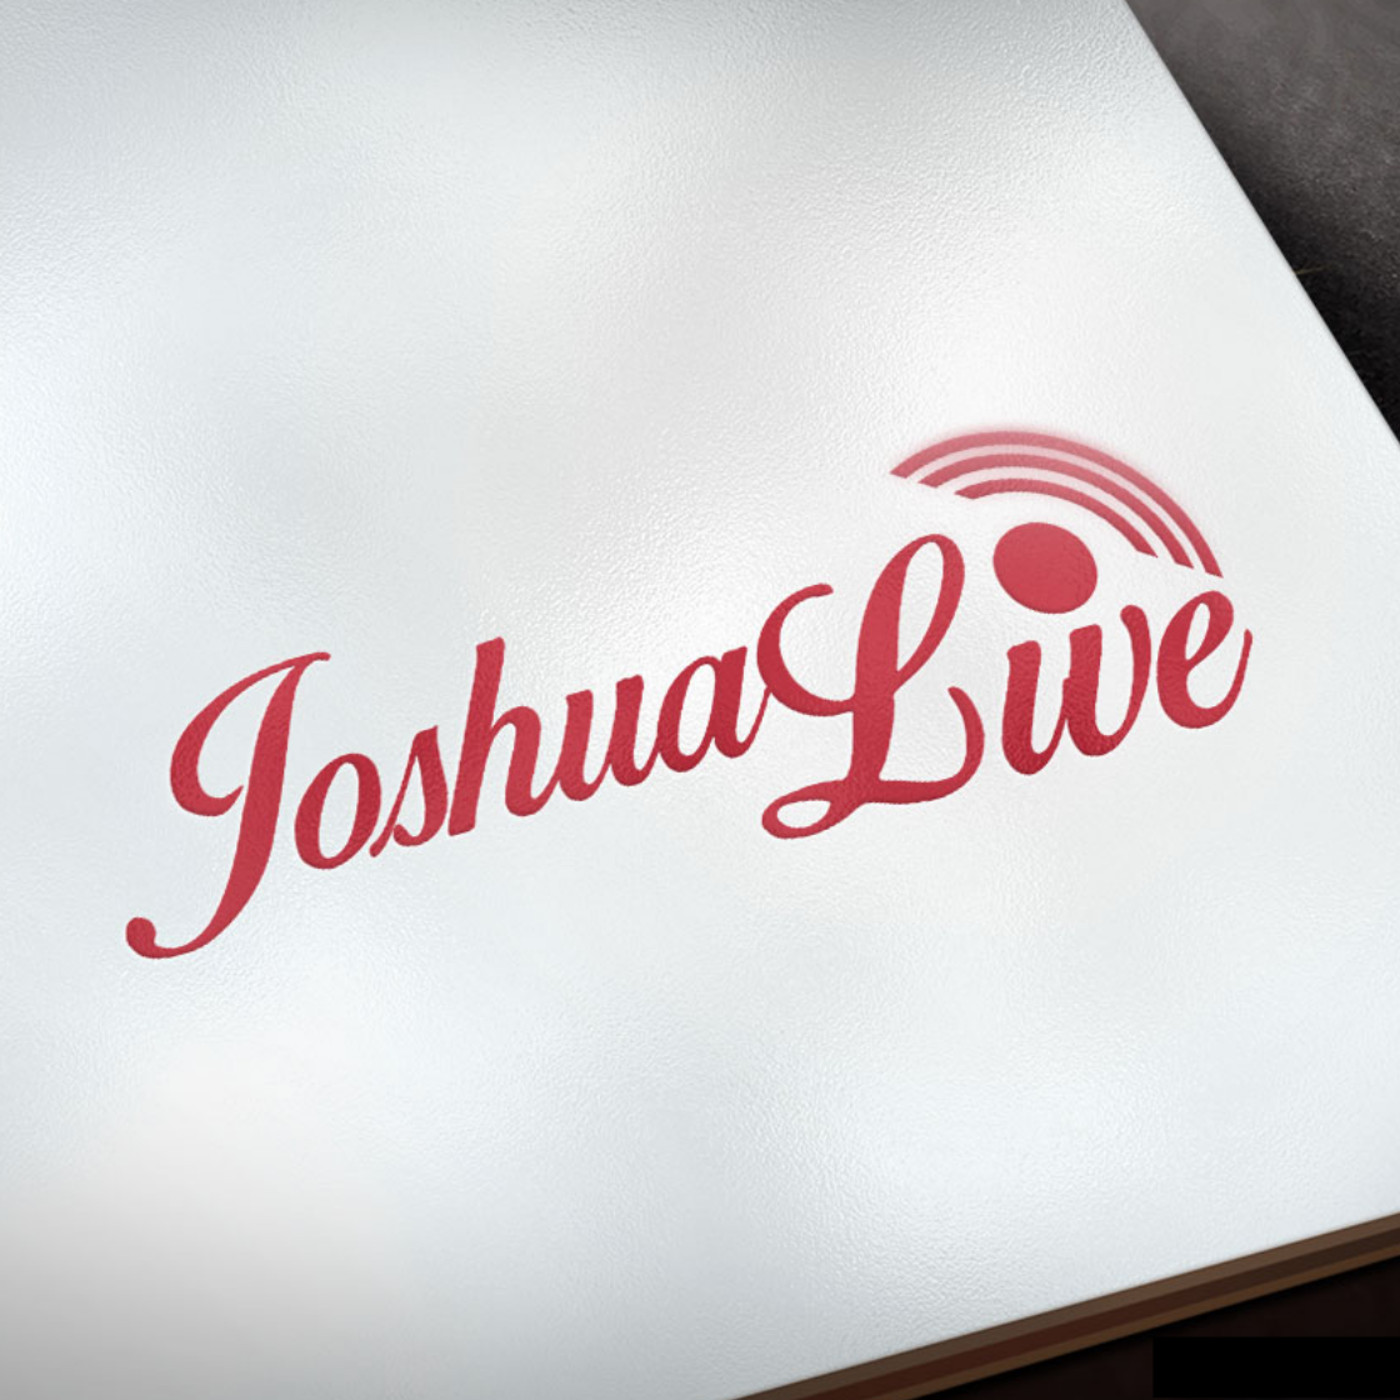 Joshua Land Cruise Live - Workshop 3